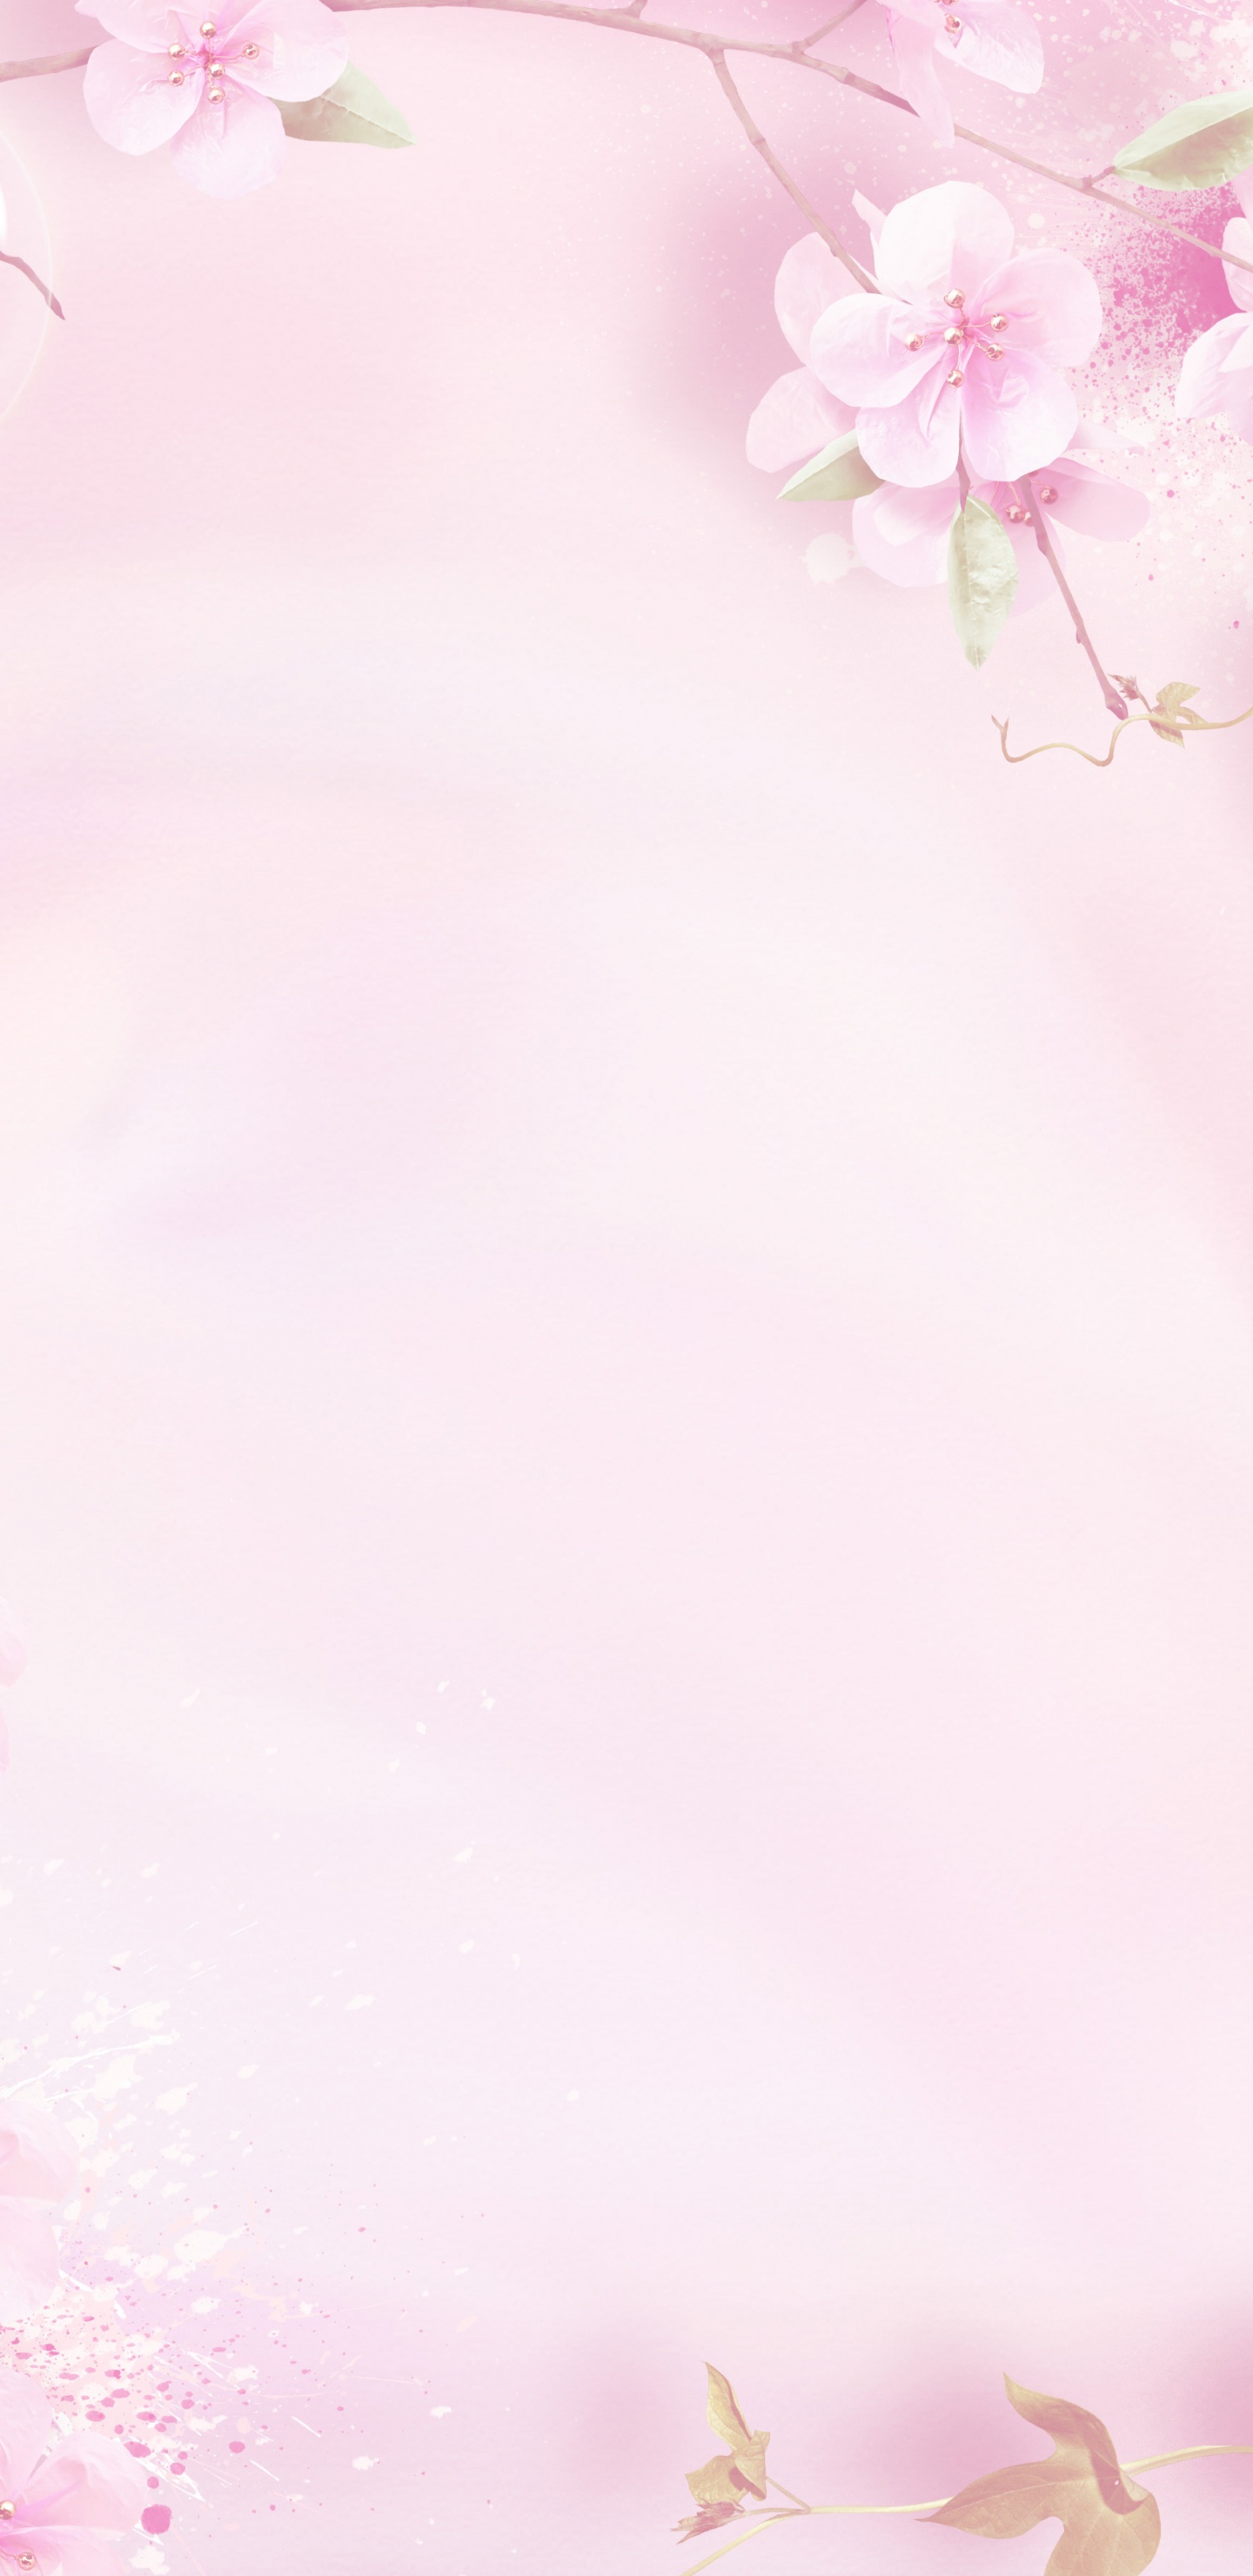 粉红色, 弹簧, 开花, 花卉设计, 樱花 壁纸 1440x2960 允许